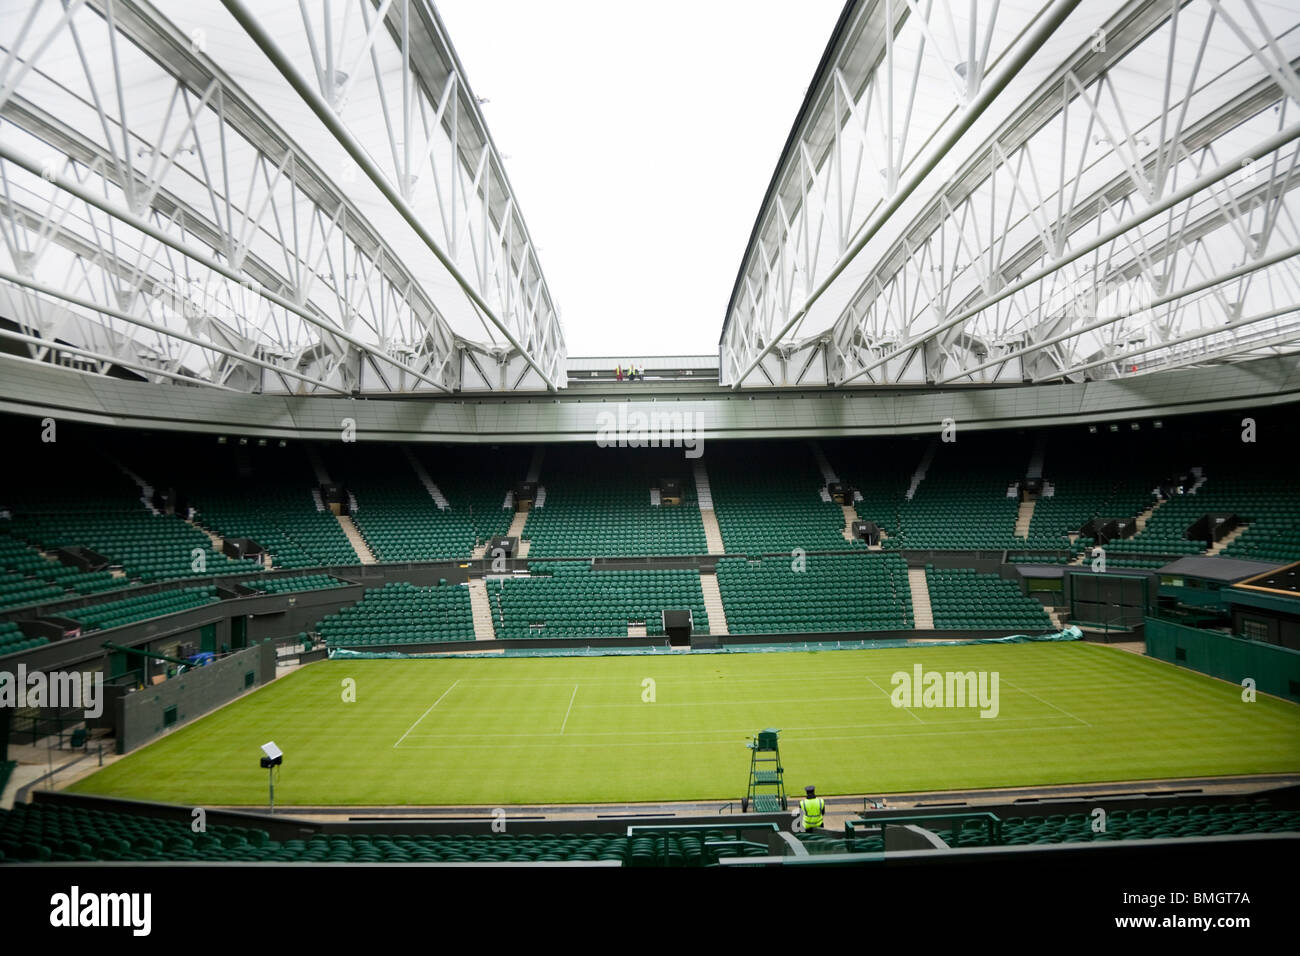 Centre Court Wimbledon / tennis Championship stadium arena with the roof closing. Wimbledon, UK. Stock Photo